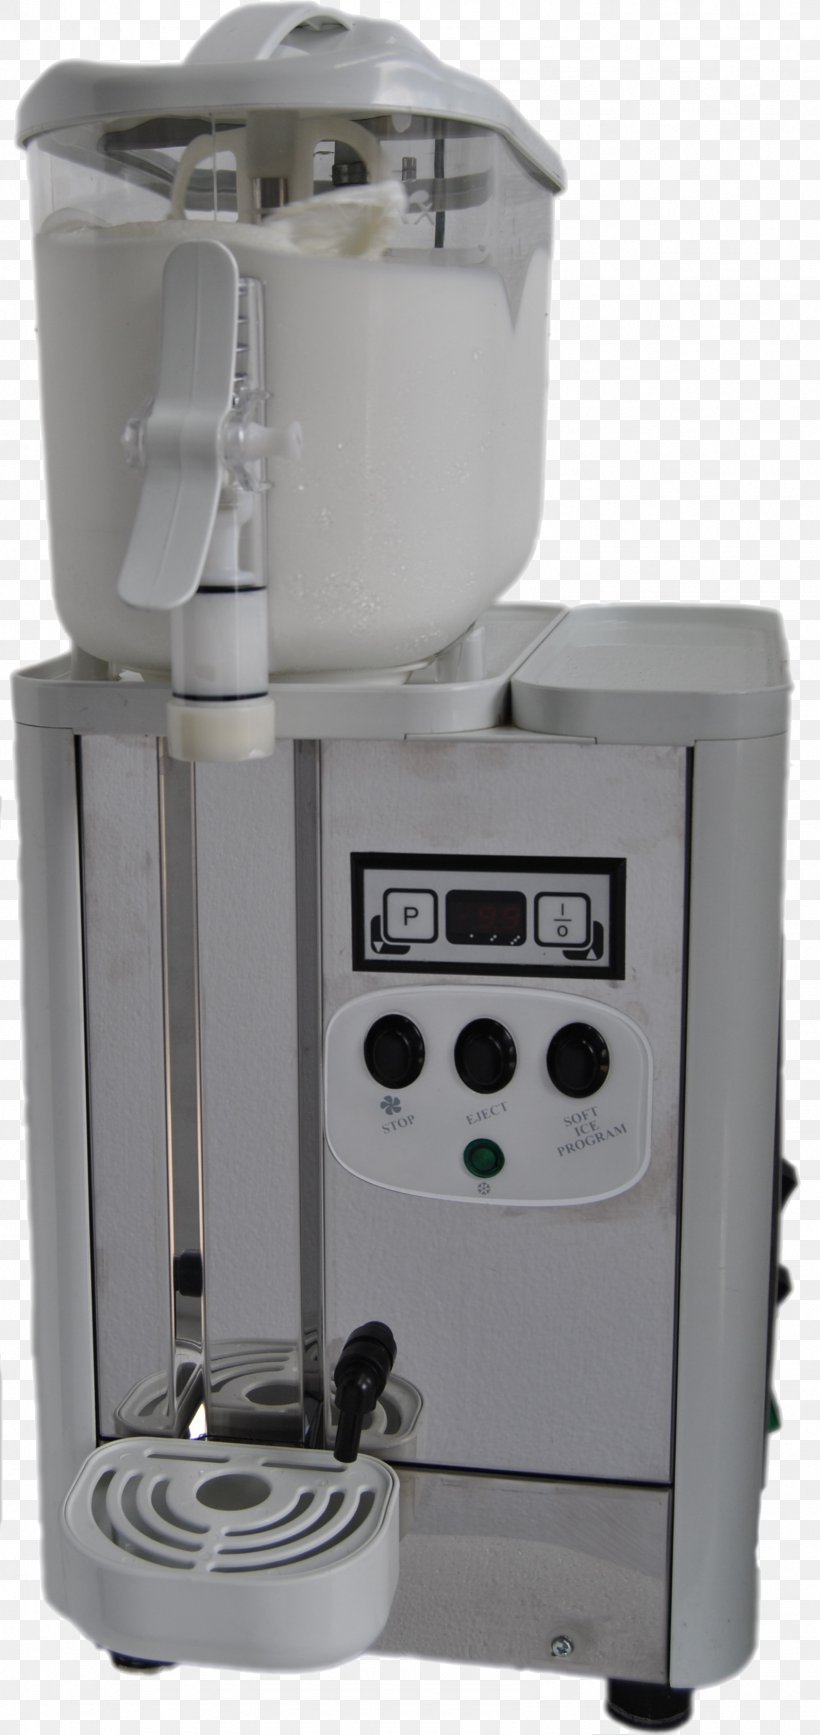 Espresso Machines Coffeemaker, PNG, 1591x3367px, Espresso, Coffeemaker, Drip Coffee Maker, Espresso Machine, Espresso Machines Download Free